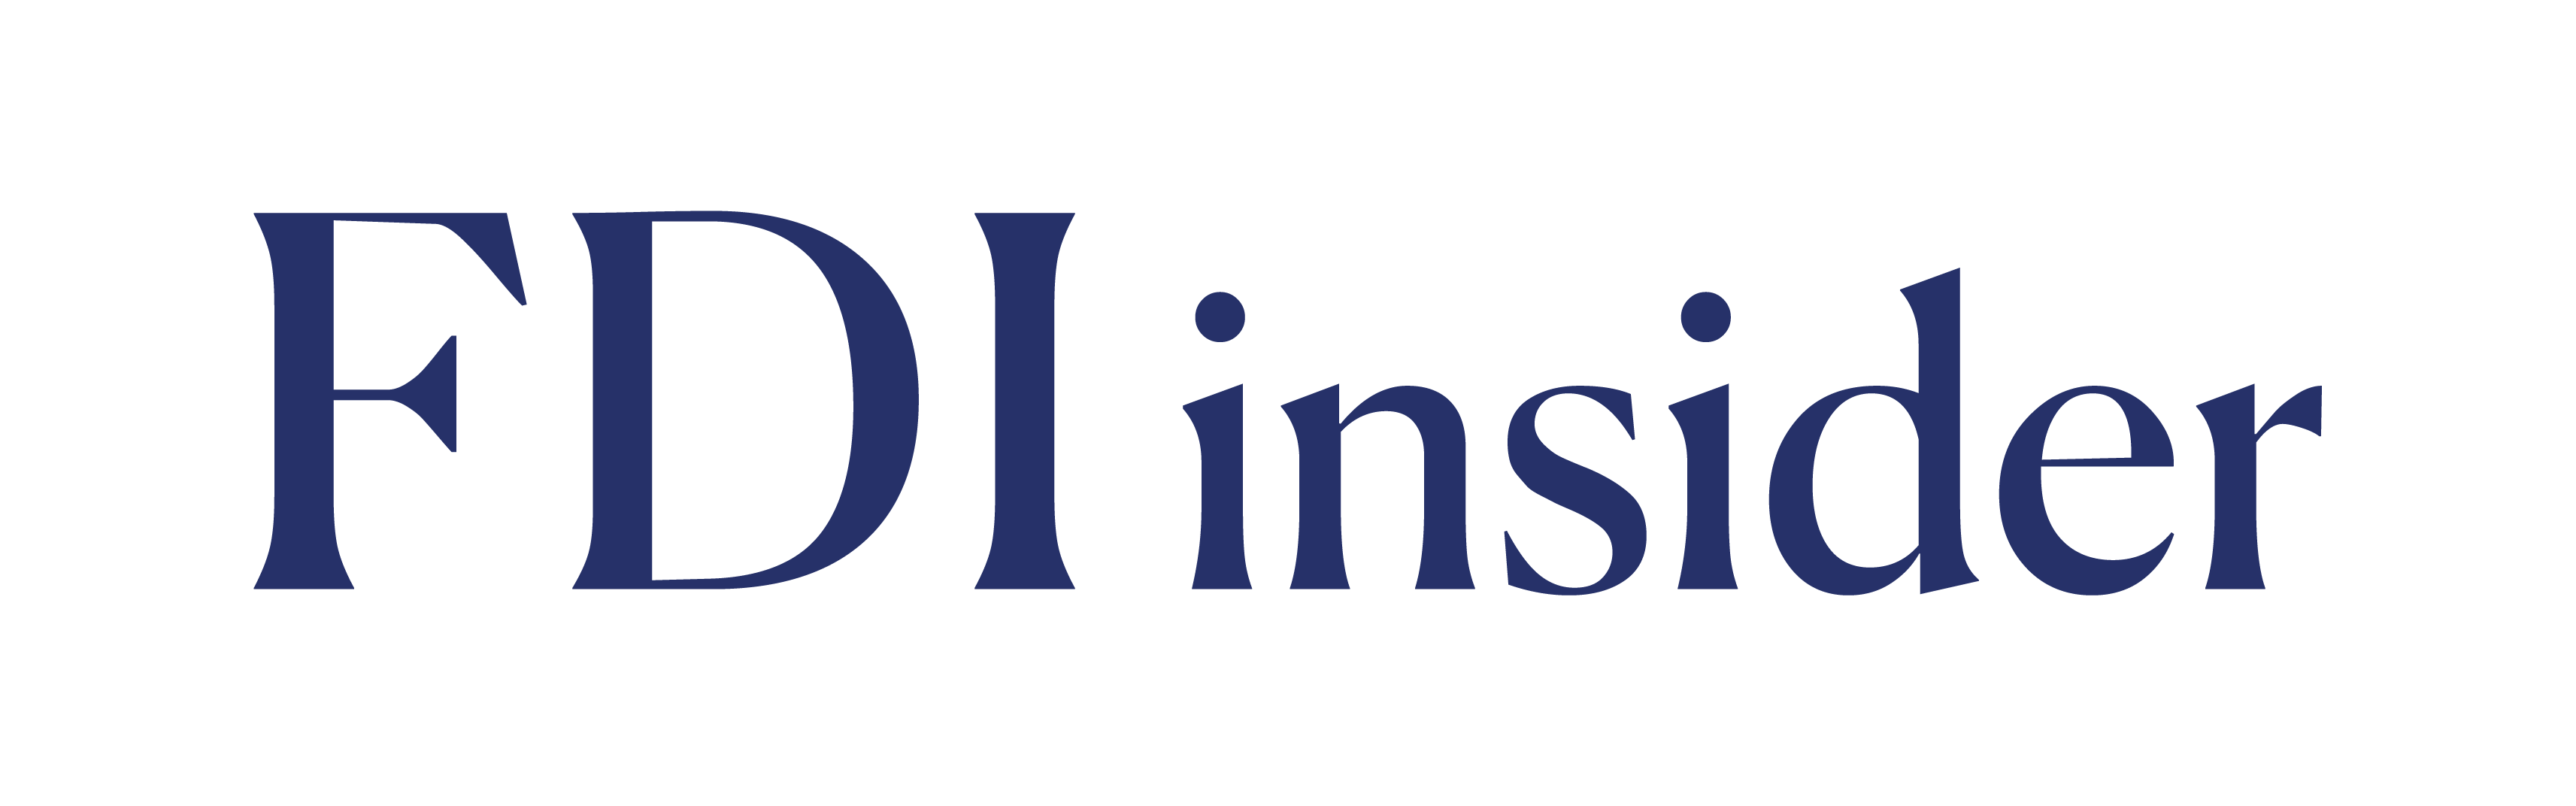 FDI Insider Logo